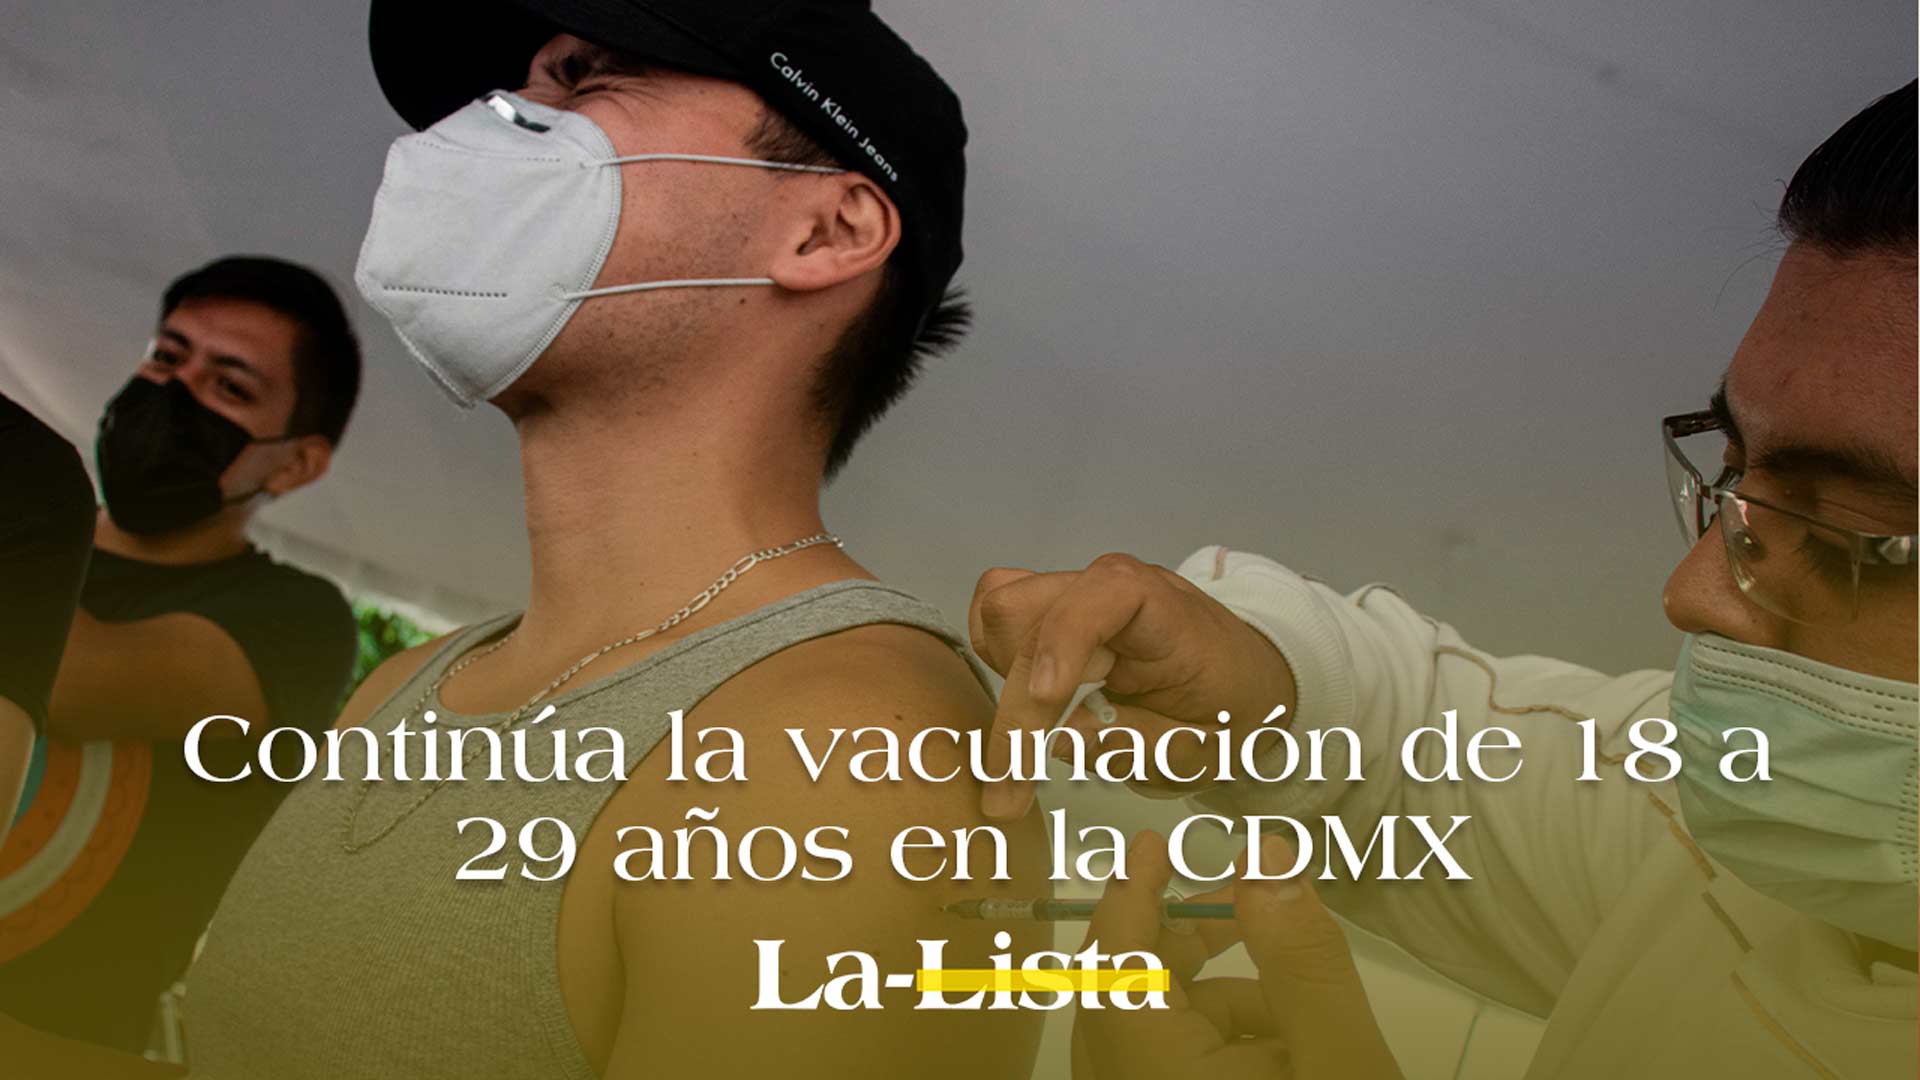 Sigue la vacunación de jóvenes de 18 a 29 años en la CDMX